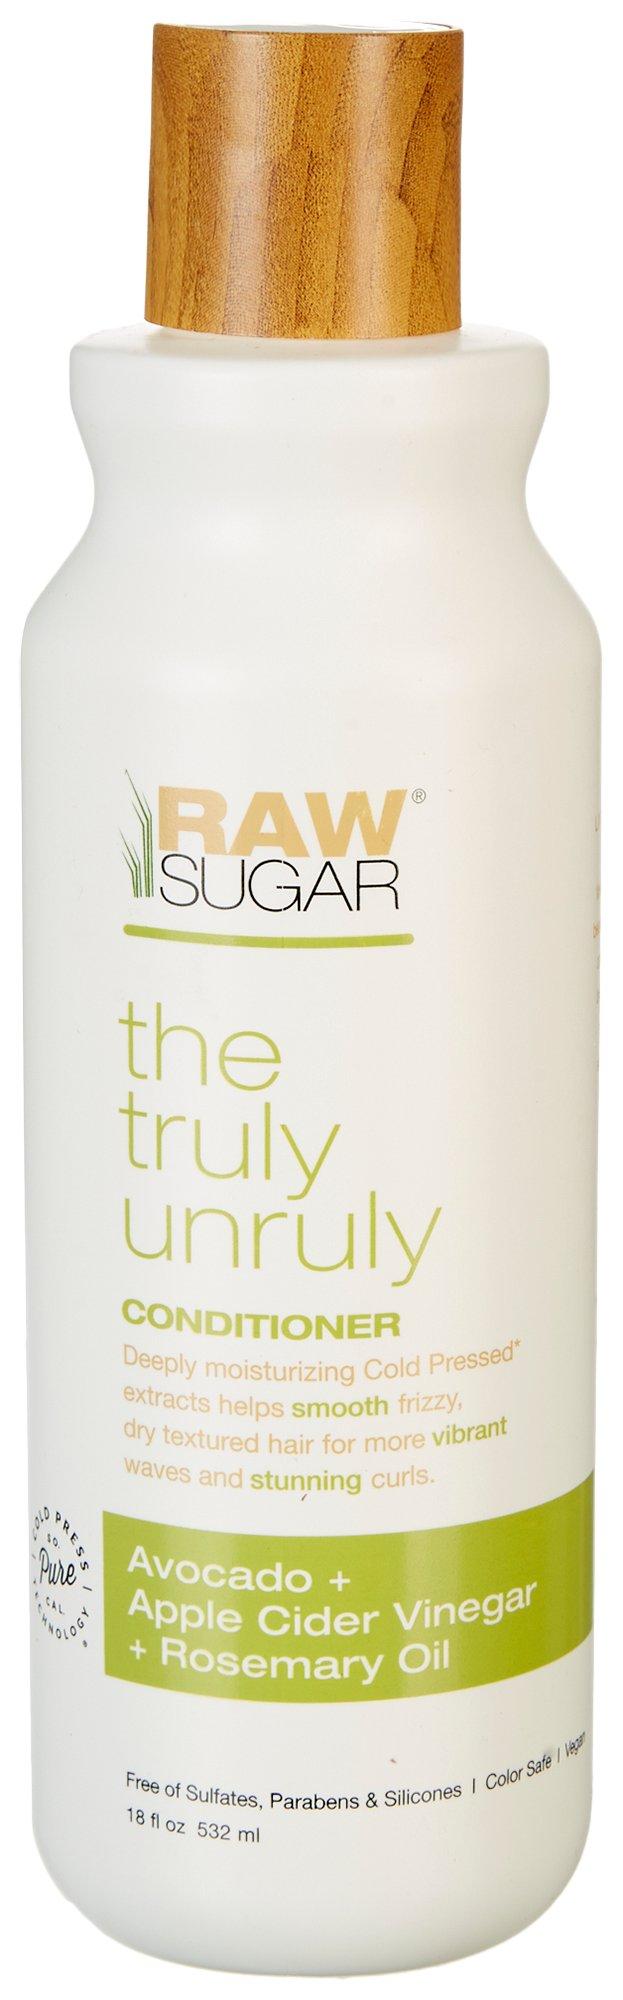 Raw Sugar Truly Unruly Conditioner 18 Fl. Oz.